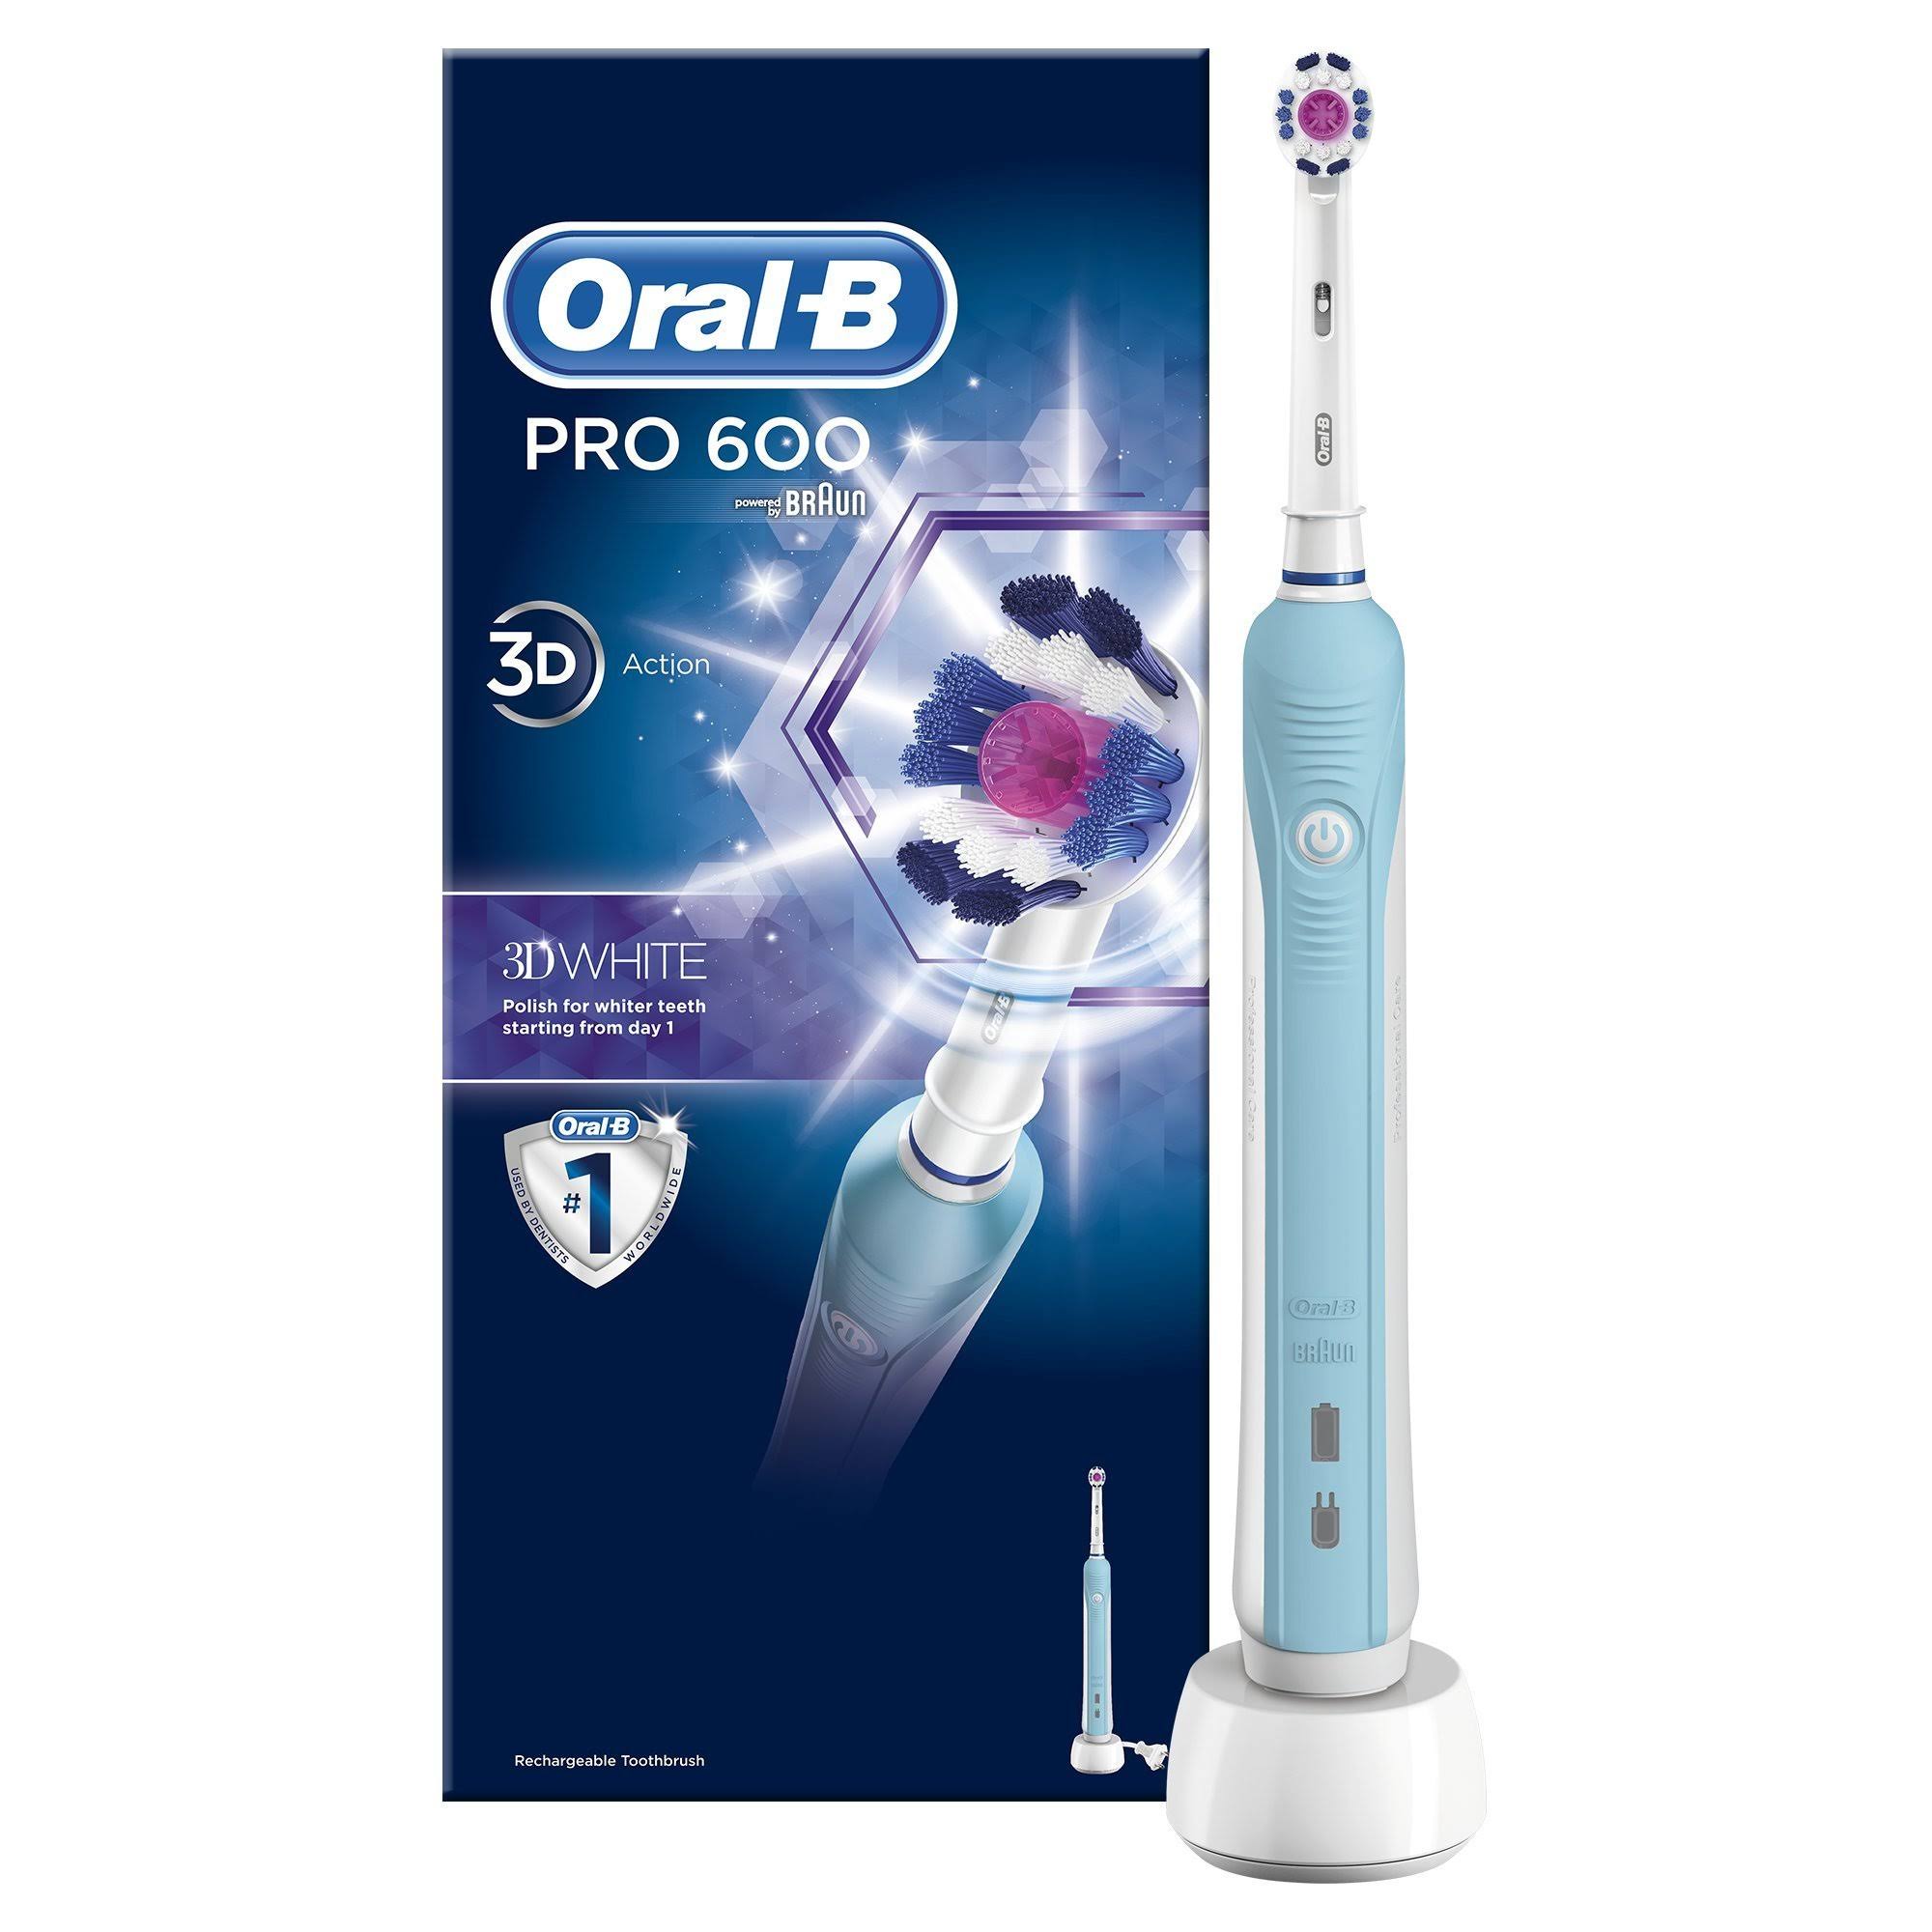 Braun Oral-B PRO 600 3DWhite Electric Toothbrush